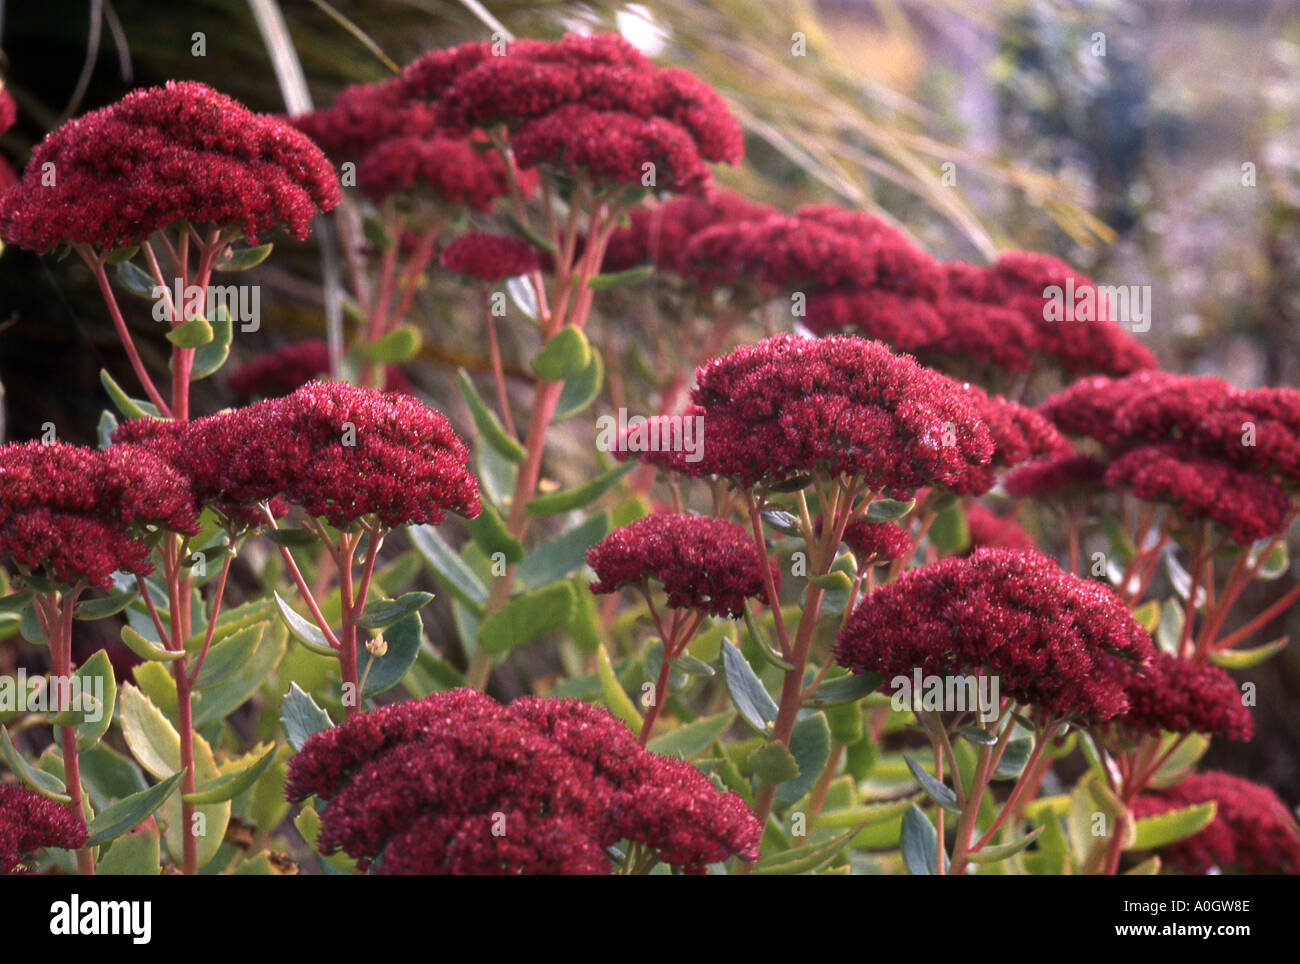 red flowering sedum plant Stock Photo